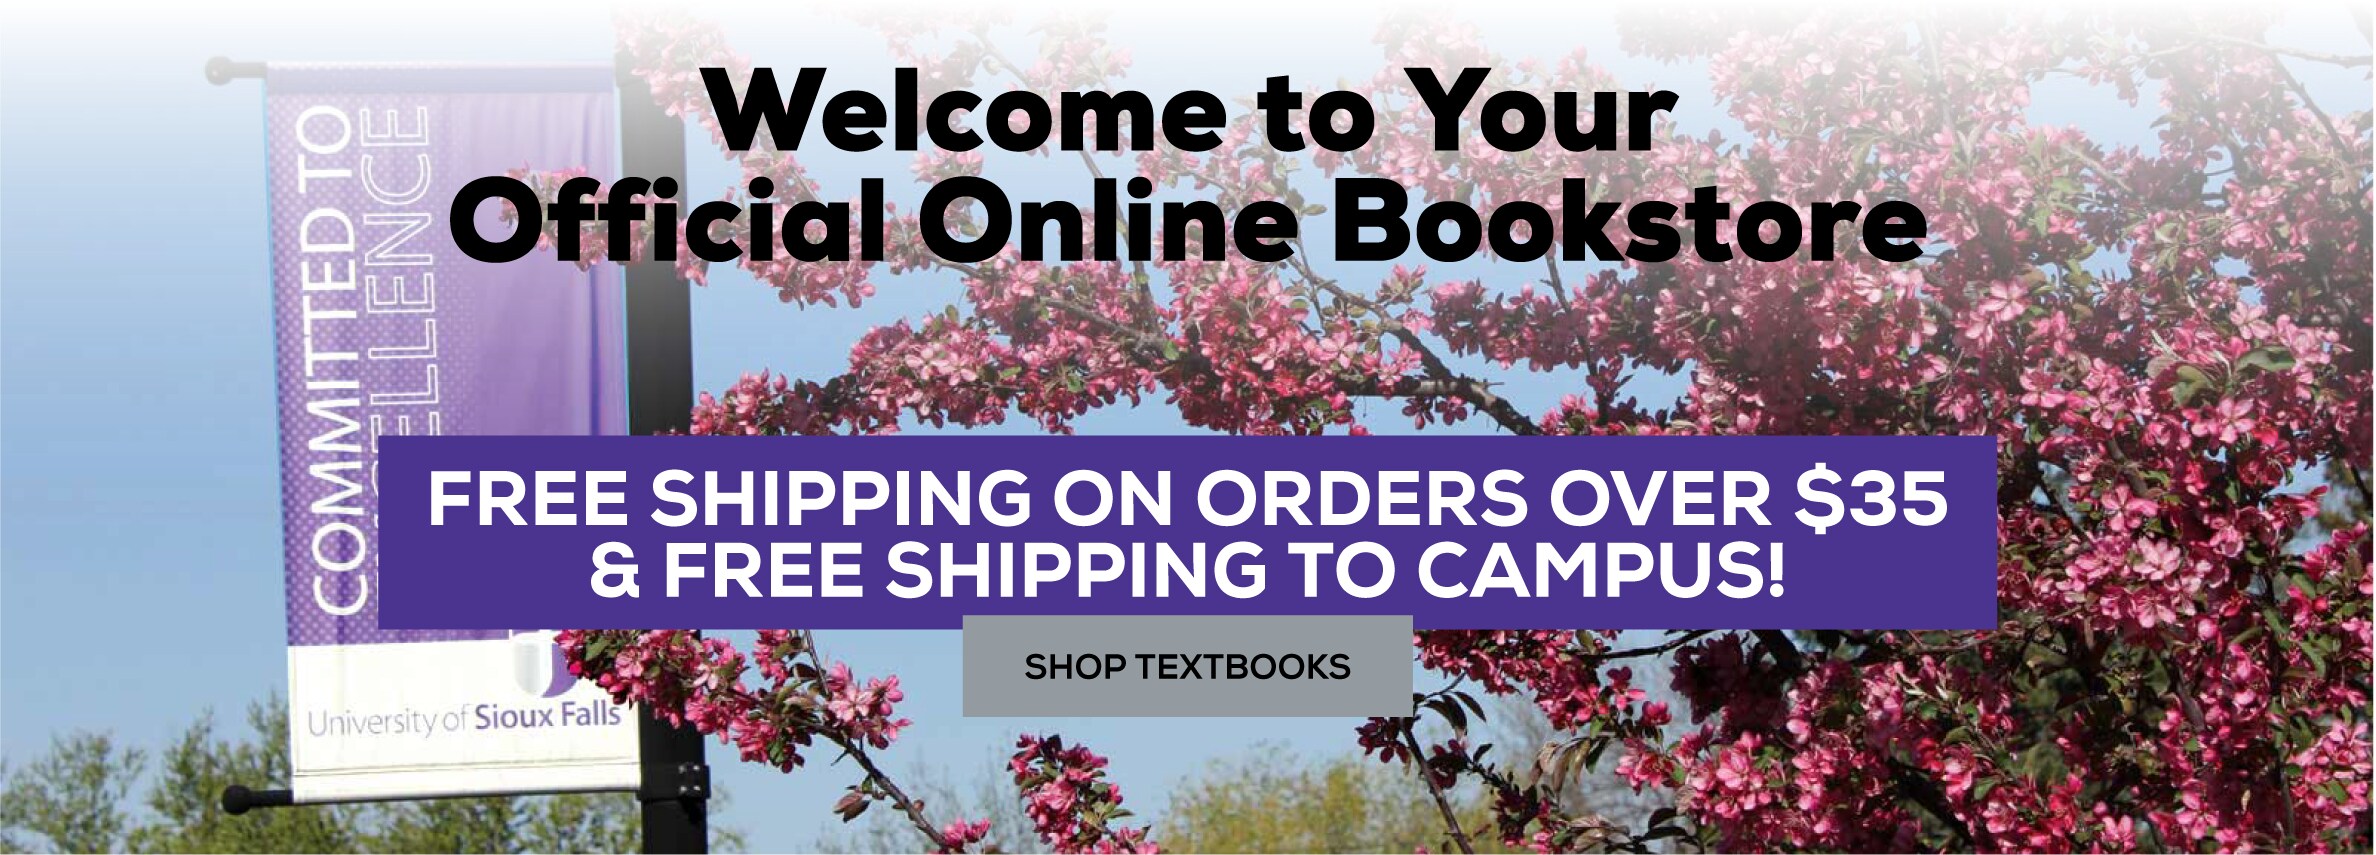 欢迎来到您的官方网上书店. 订单满35美元免费送货，免费送货到校园! 商店的教科书.